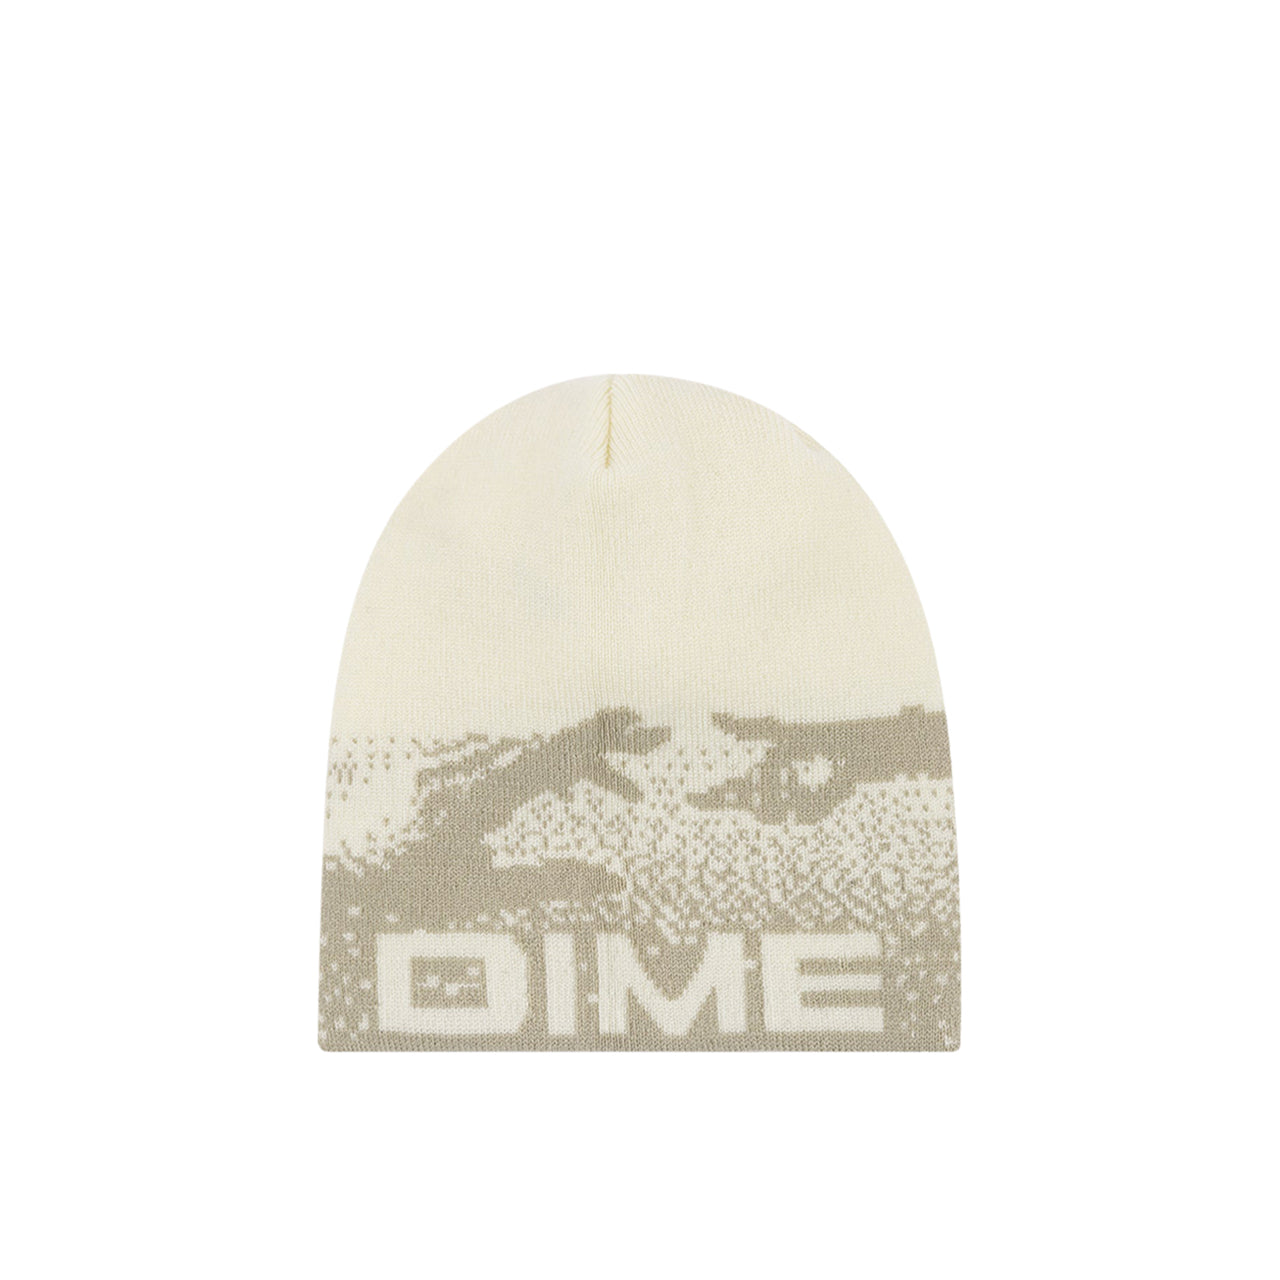 Dime Welcome Beanie (Weiß) DIMEHO40WHT - Allike Store